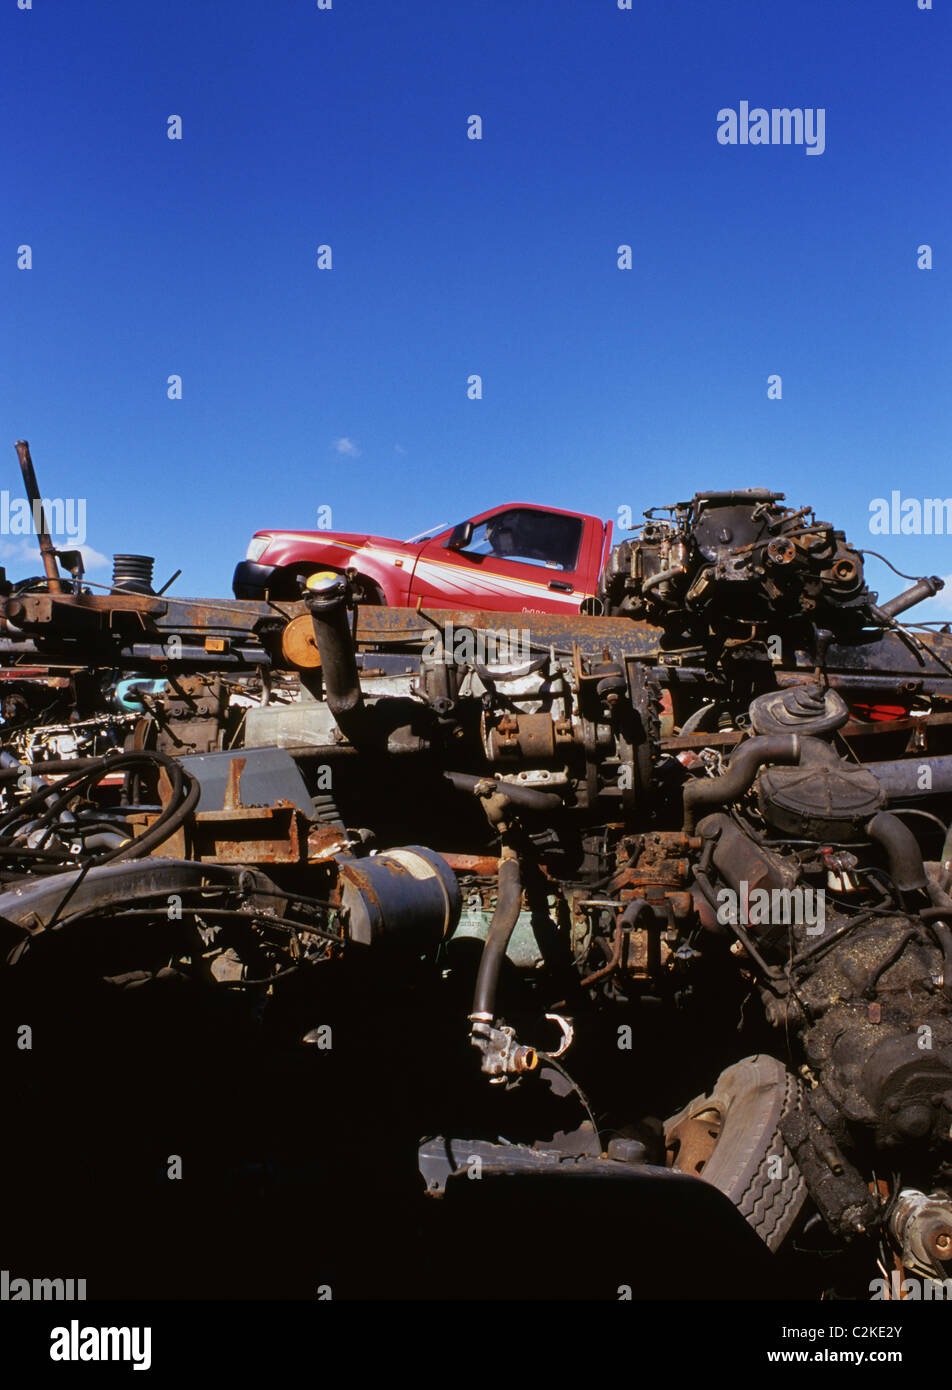 pickup truck and scrapmetal in scrapyard uk Stock Photo